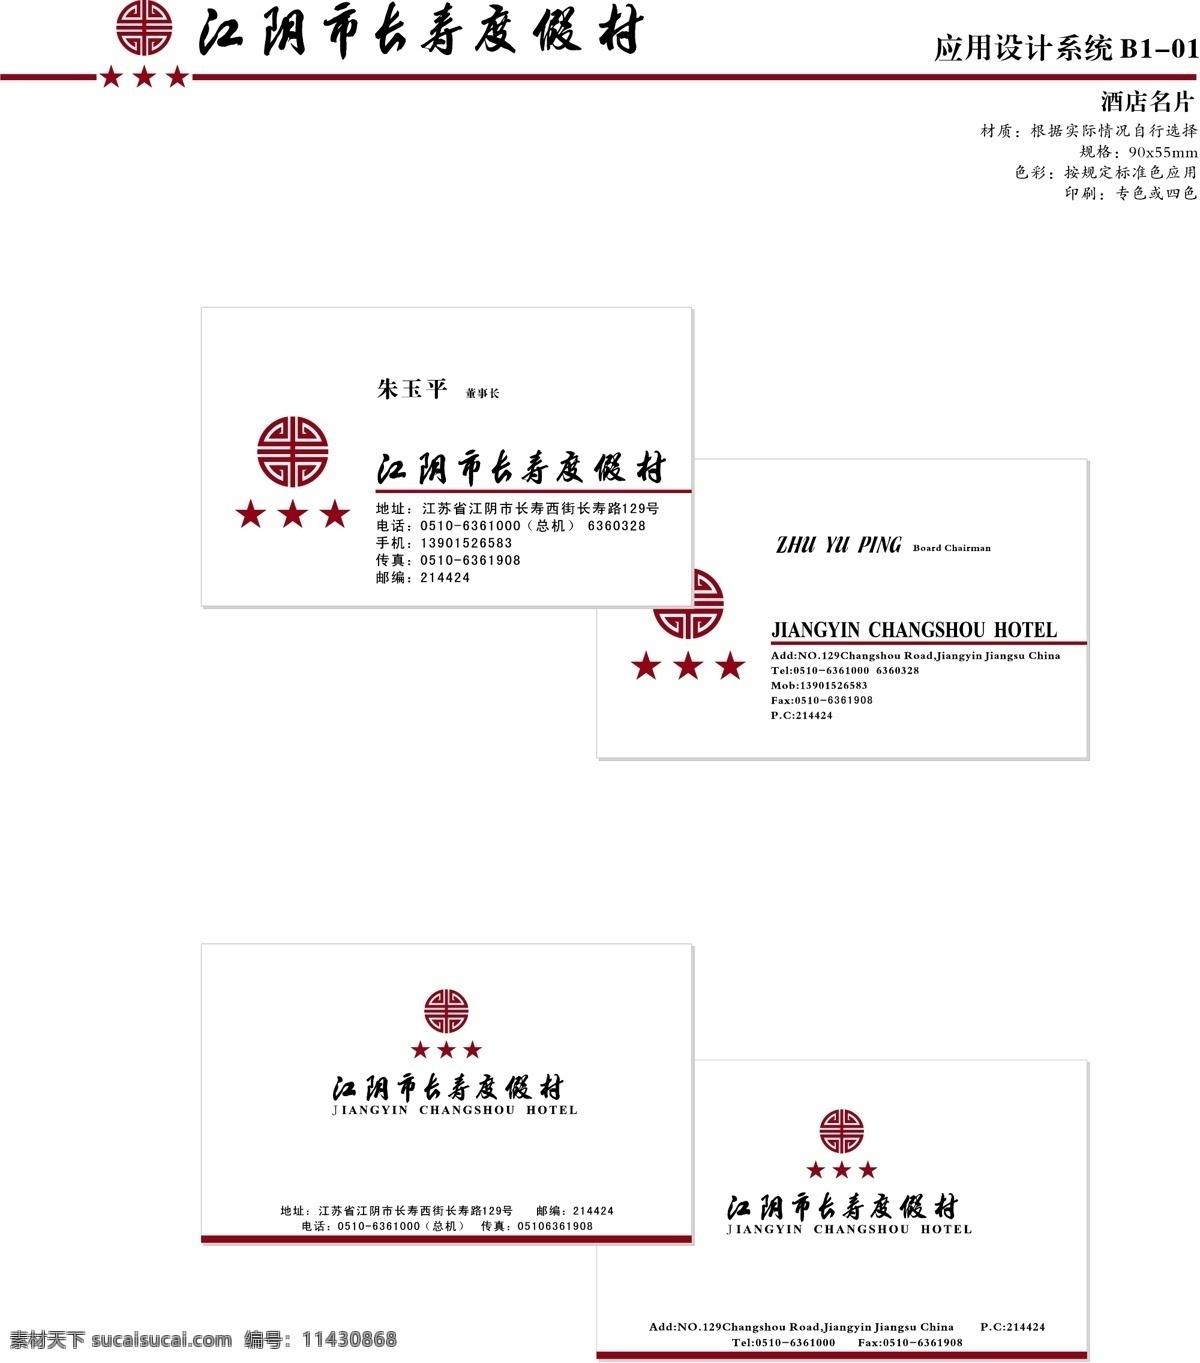 江阴 长寿 渡假村 vi vi设计 矢量 文件 宝典 应用系统 b1 矢量图